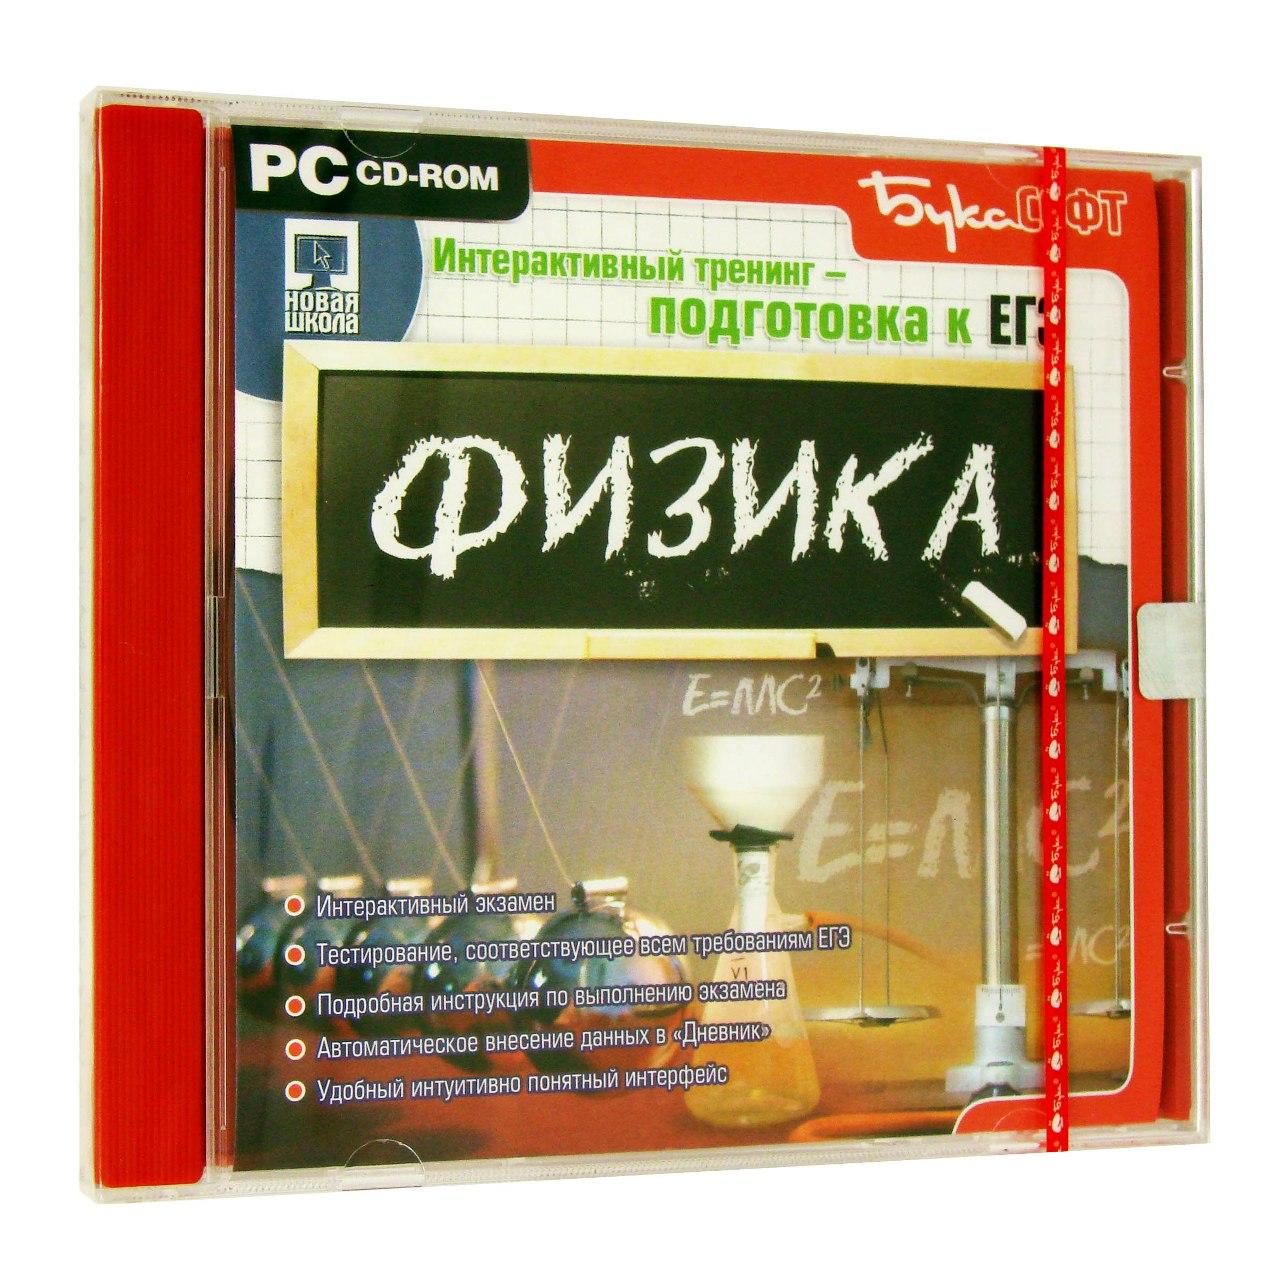 Компьютерный компакт-диск Подготовка к ЕГЭ. Физика (ПК), фирма "Бука",  1CD